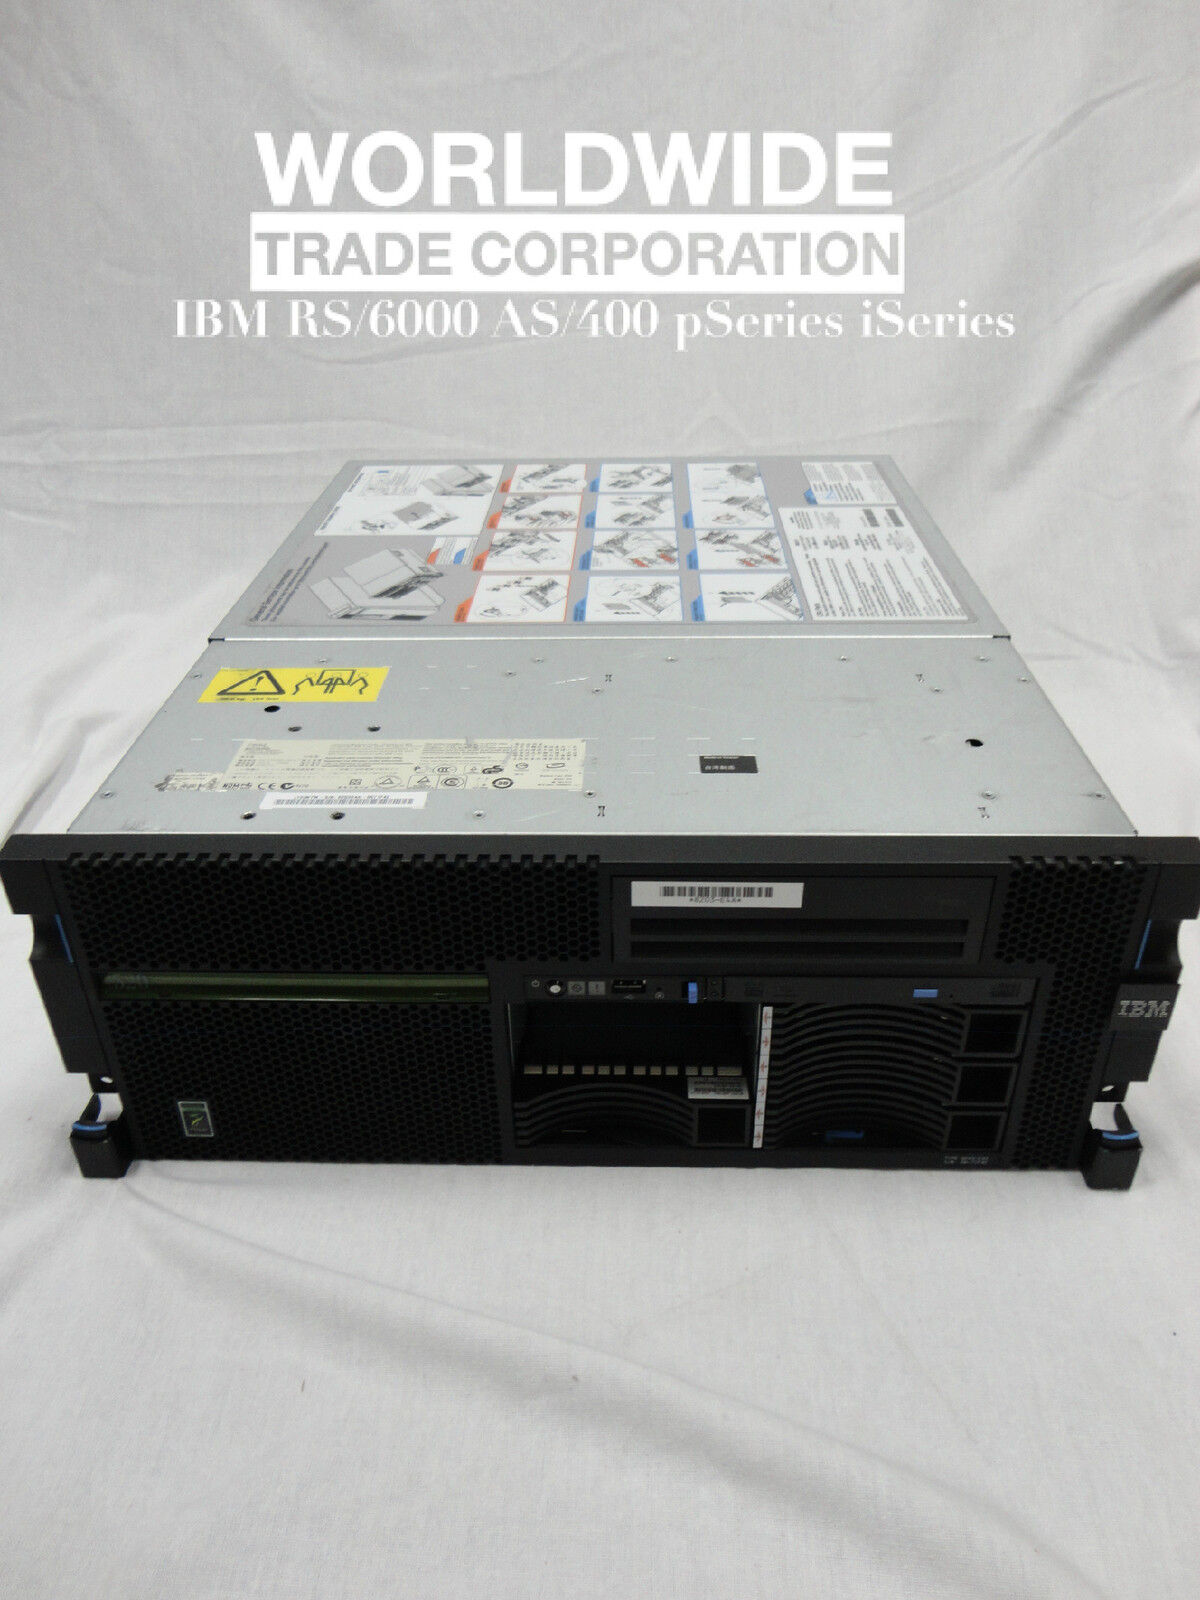 IBM 8203 E4A 520 Server 4.2GHz 2-Core Power6, i series 1OS V5R4 30 user license